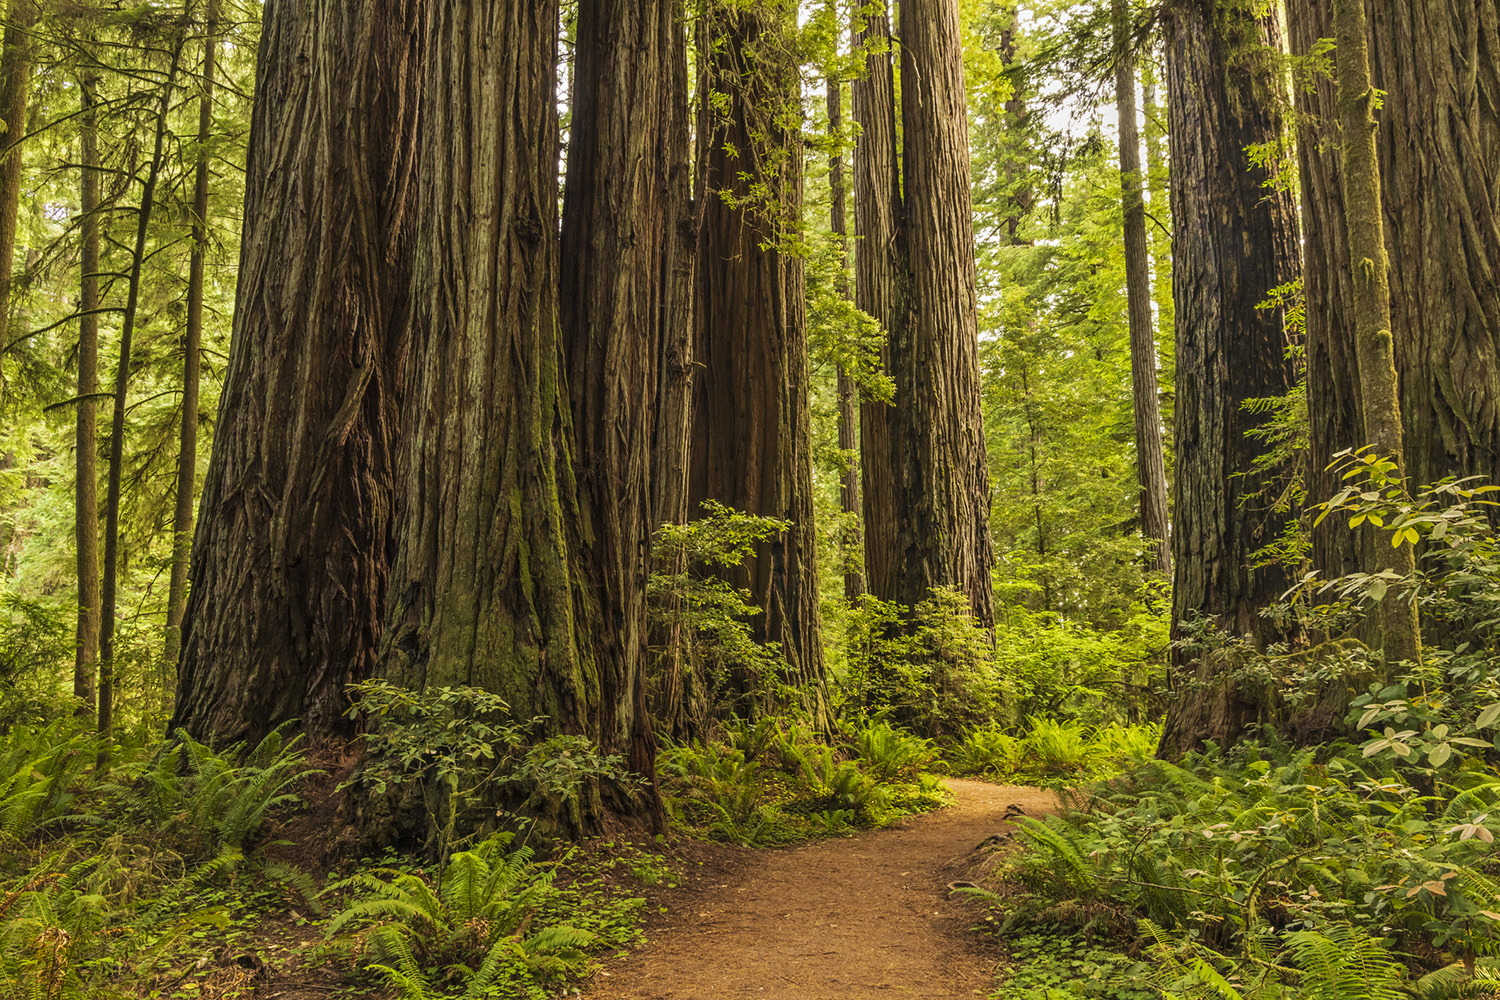 A path runs between giant redwood trunks